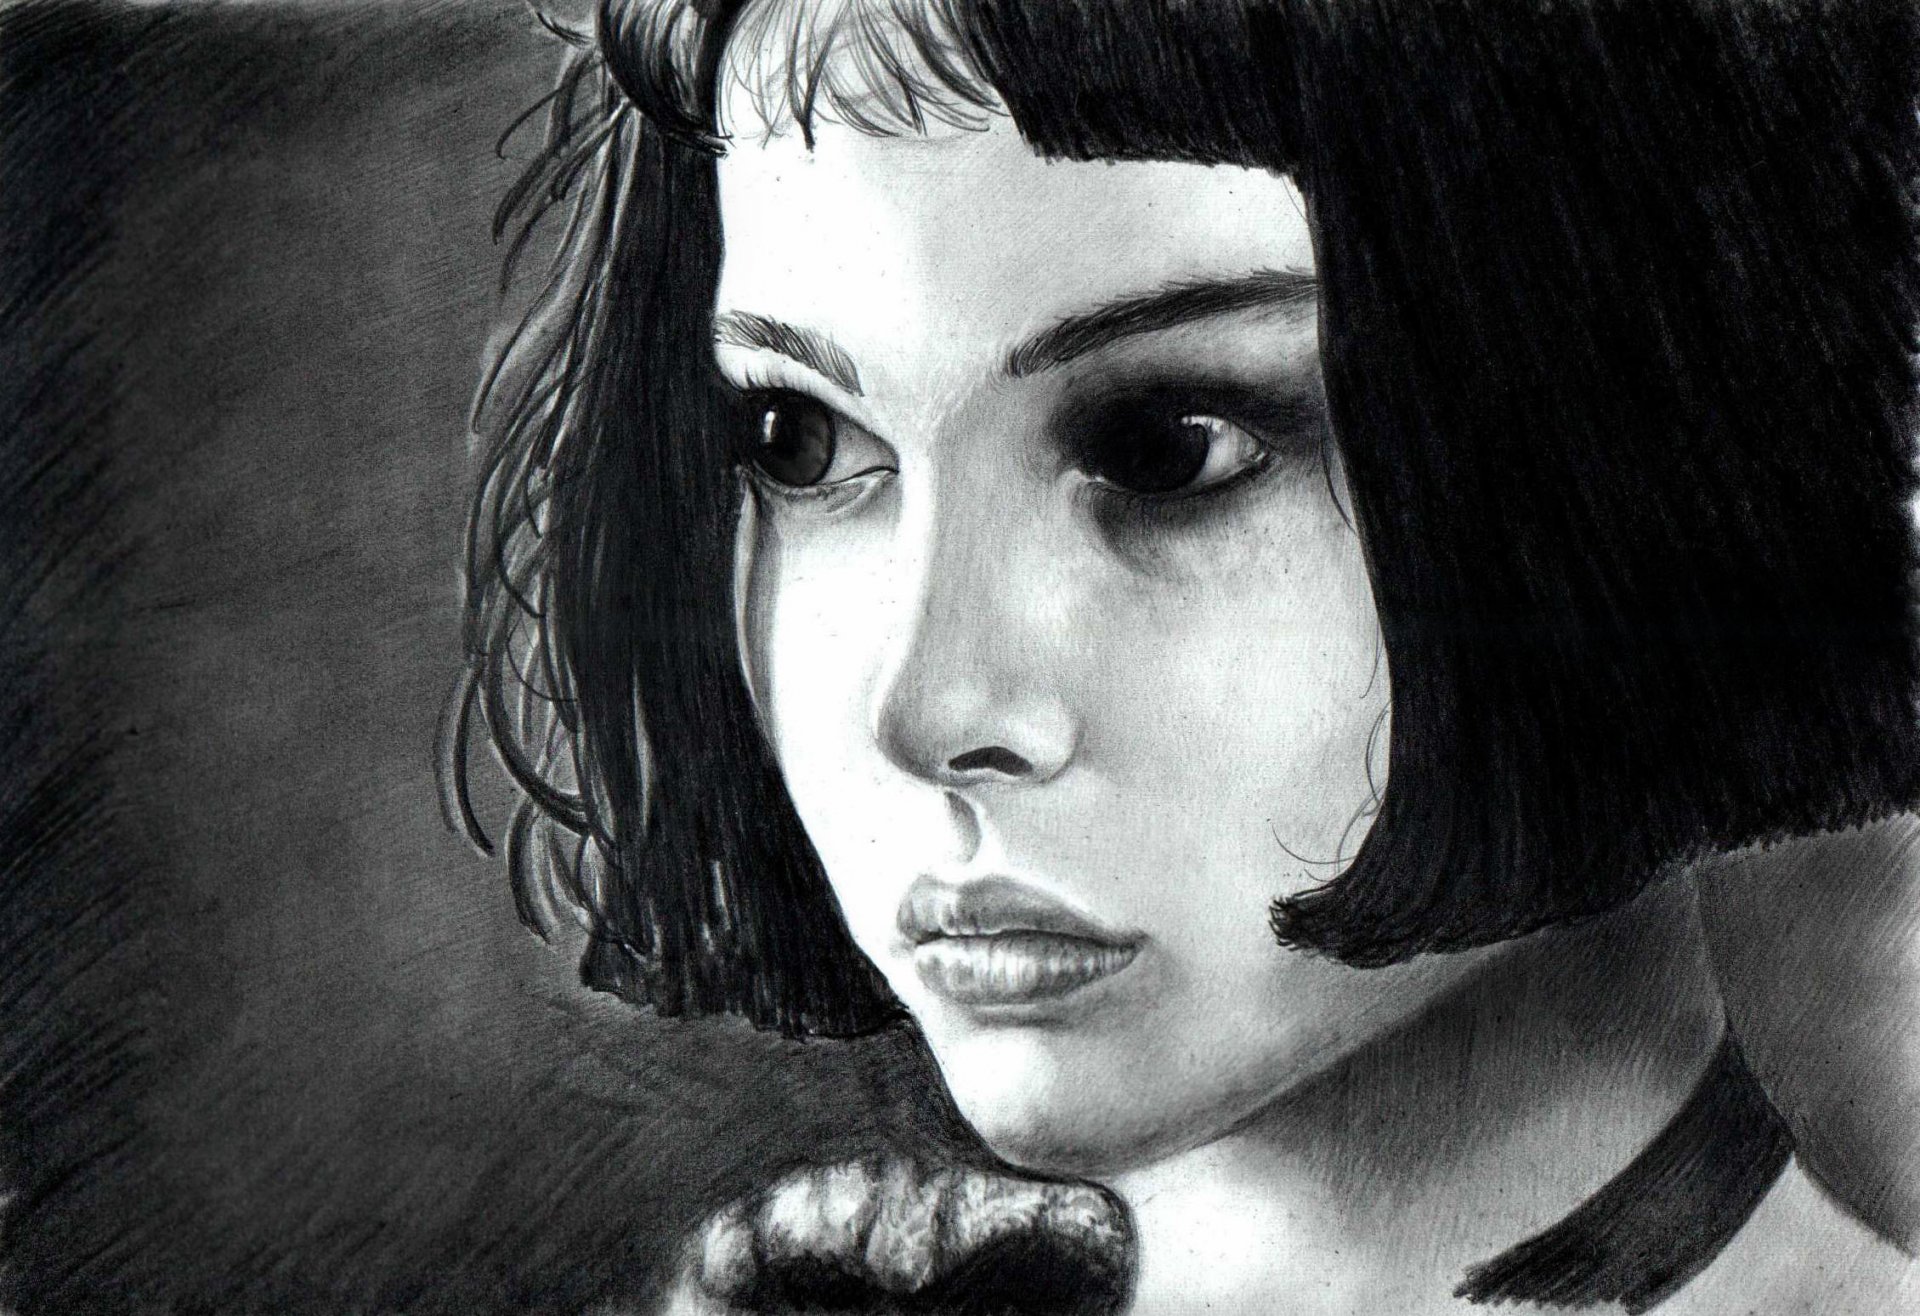 леон натали портман рисунок девочка матильда черно белое волосы взгляд глаза актриса портрет